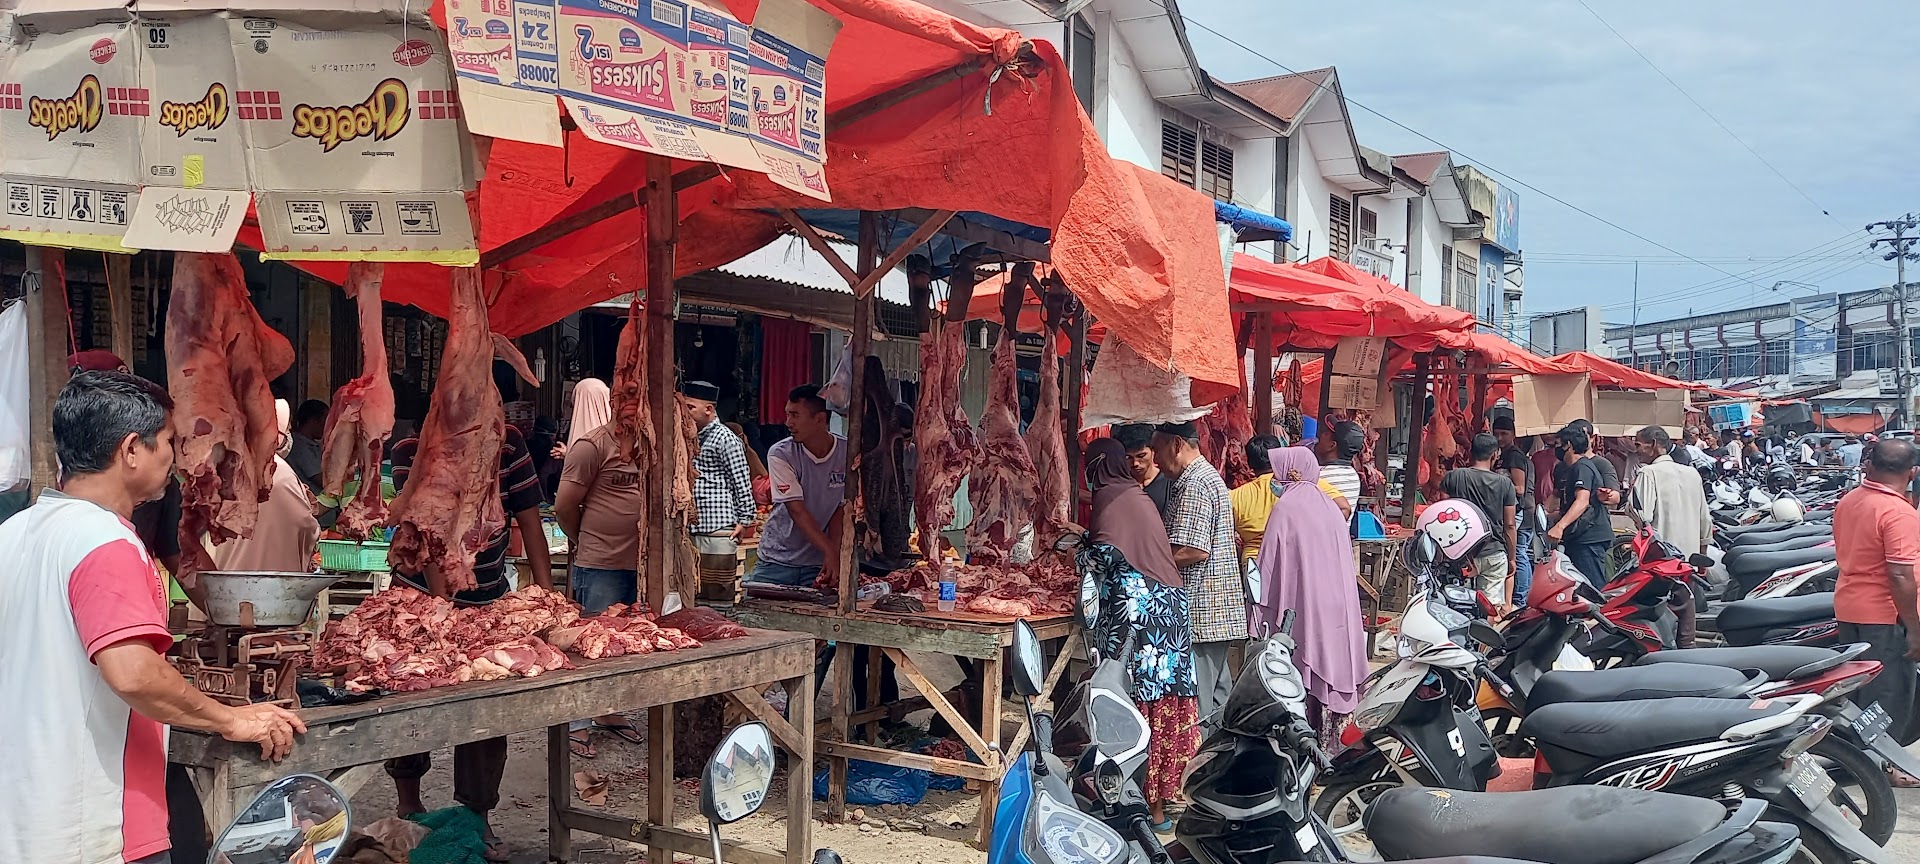 Pasar Tradisional Simpang Tujuh Ulee Kareng Photo